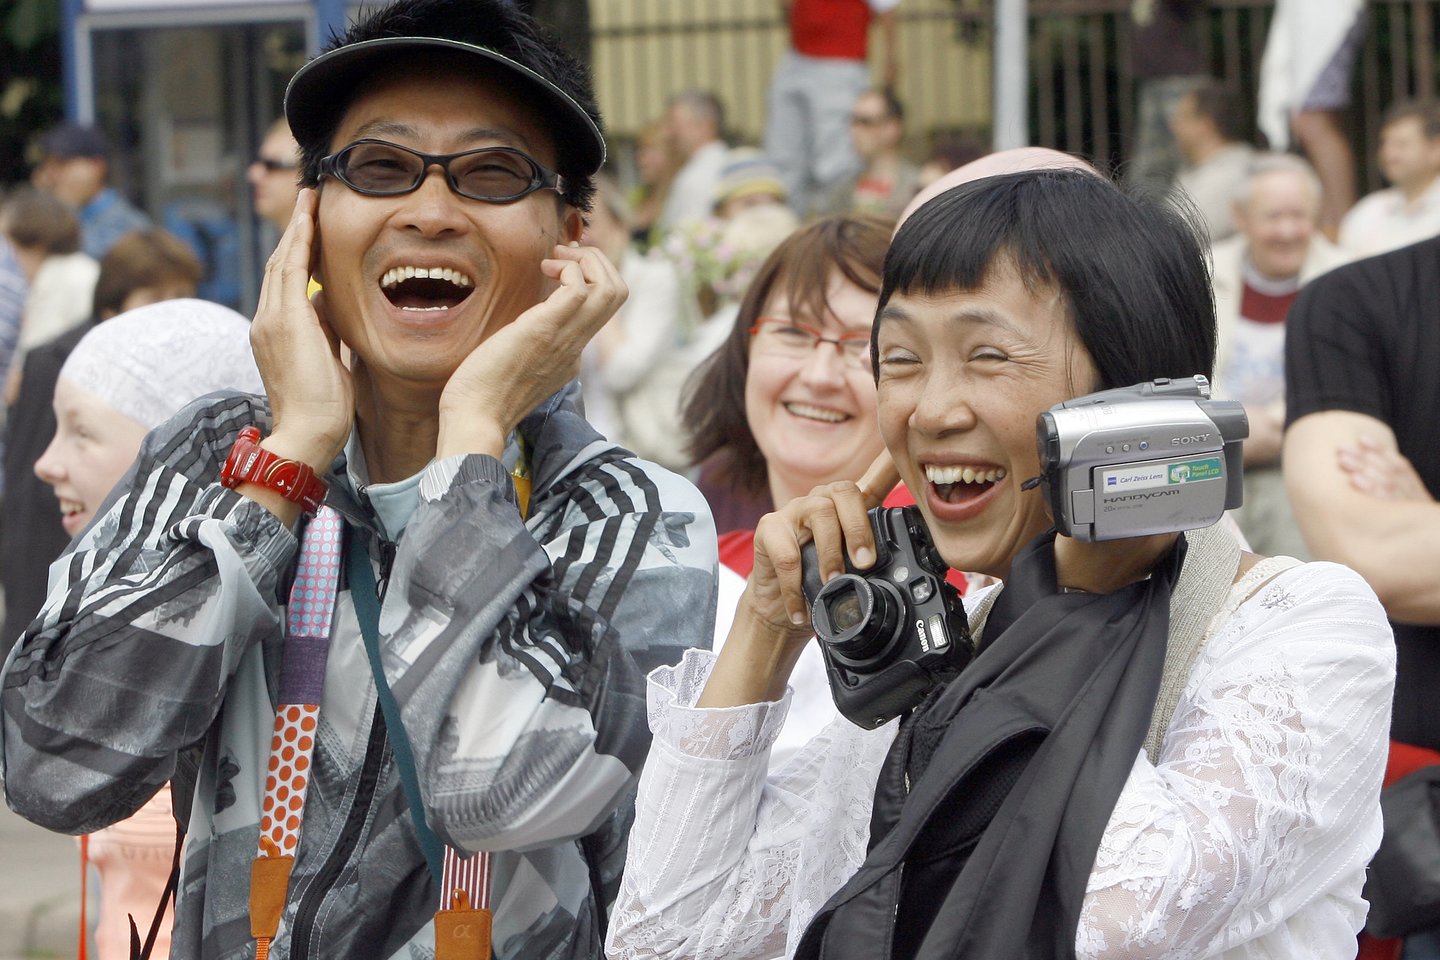  Japonai yra geidžiami turistai visame pasaulyje. Jie labai smalsūs, aktyvūs, tolerantiški, neriboja išlaidų suvenyrams.<br> R.Neverbicko nuotr. 